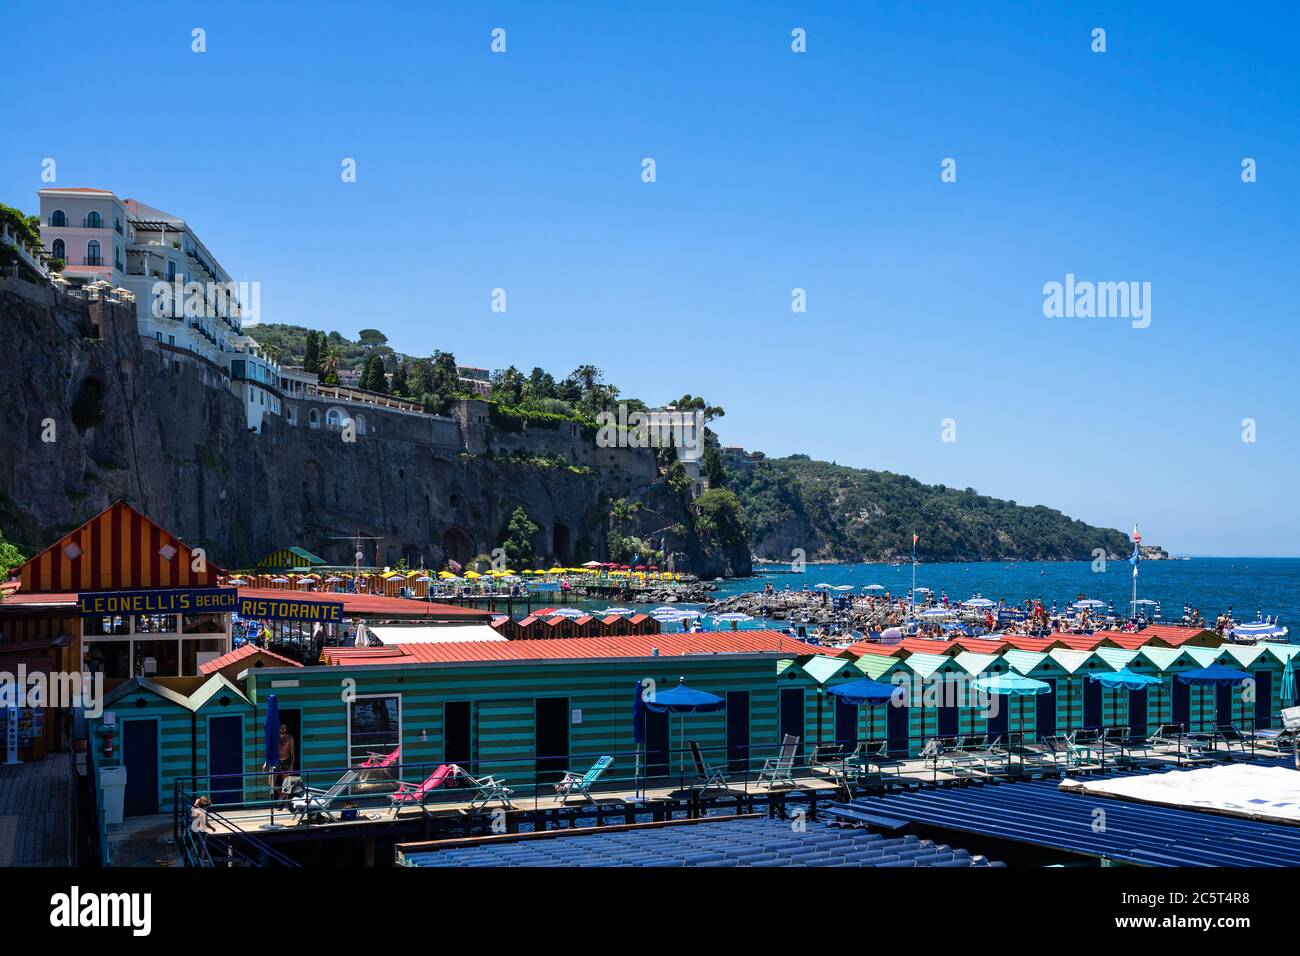 Sorrento, Campania, Italia, Giugno 2020 – bagni colorati presso lo stabilimento balneare di Leonelli a Sorrento Foto Stock